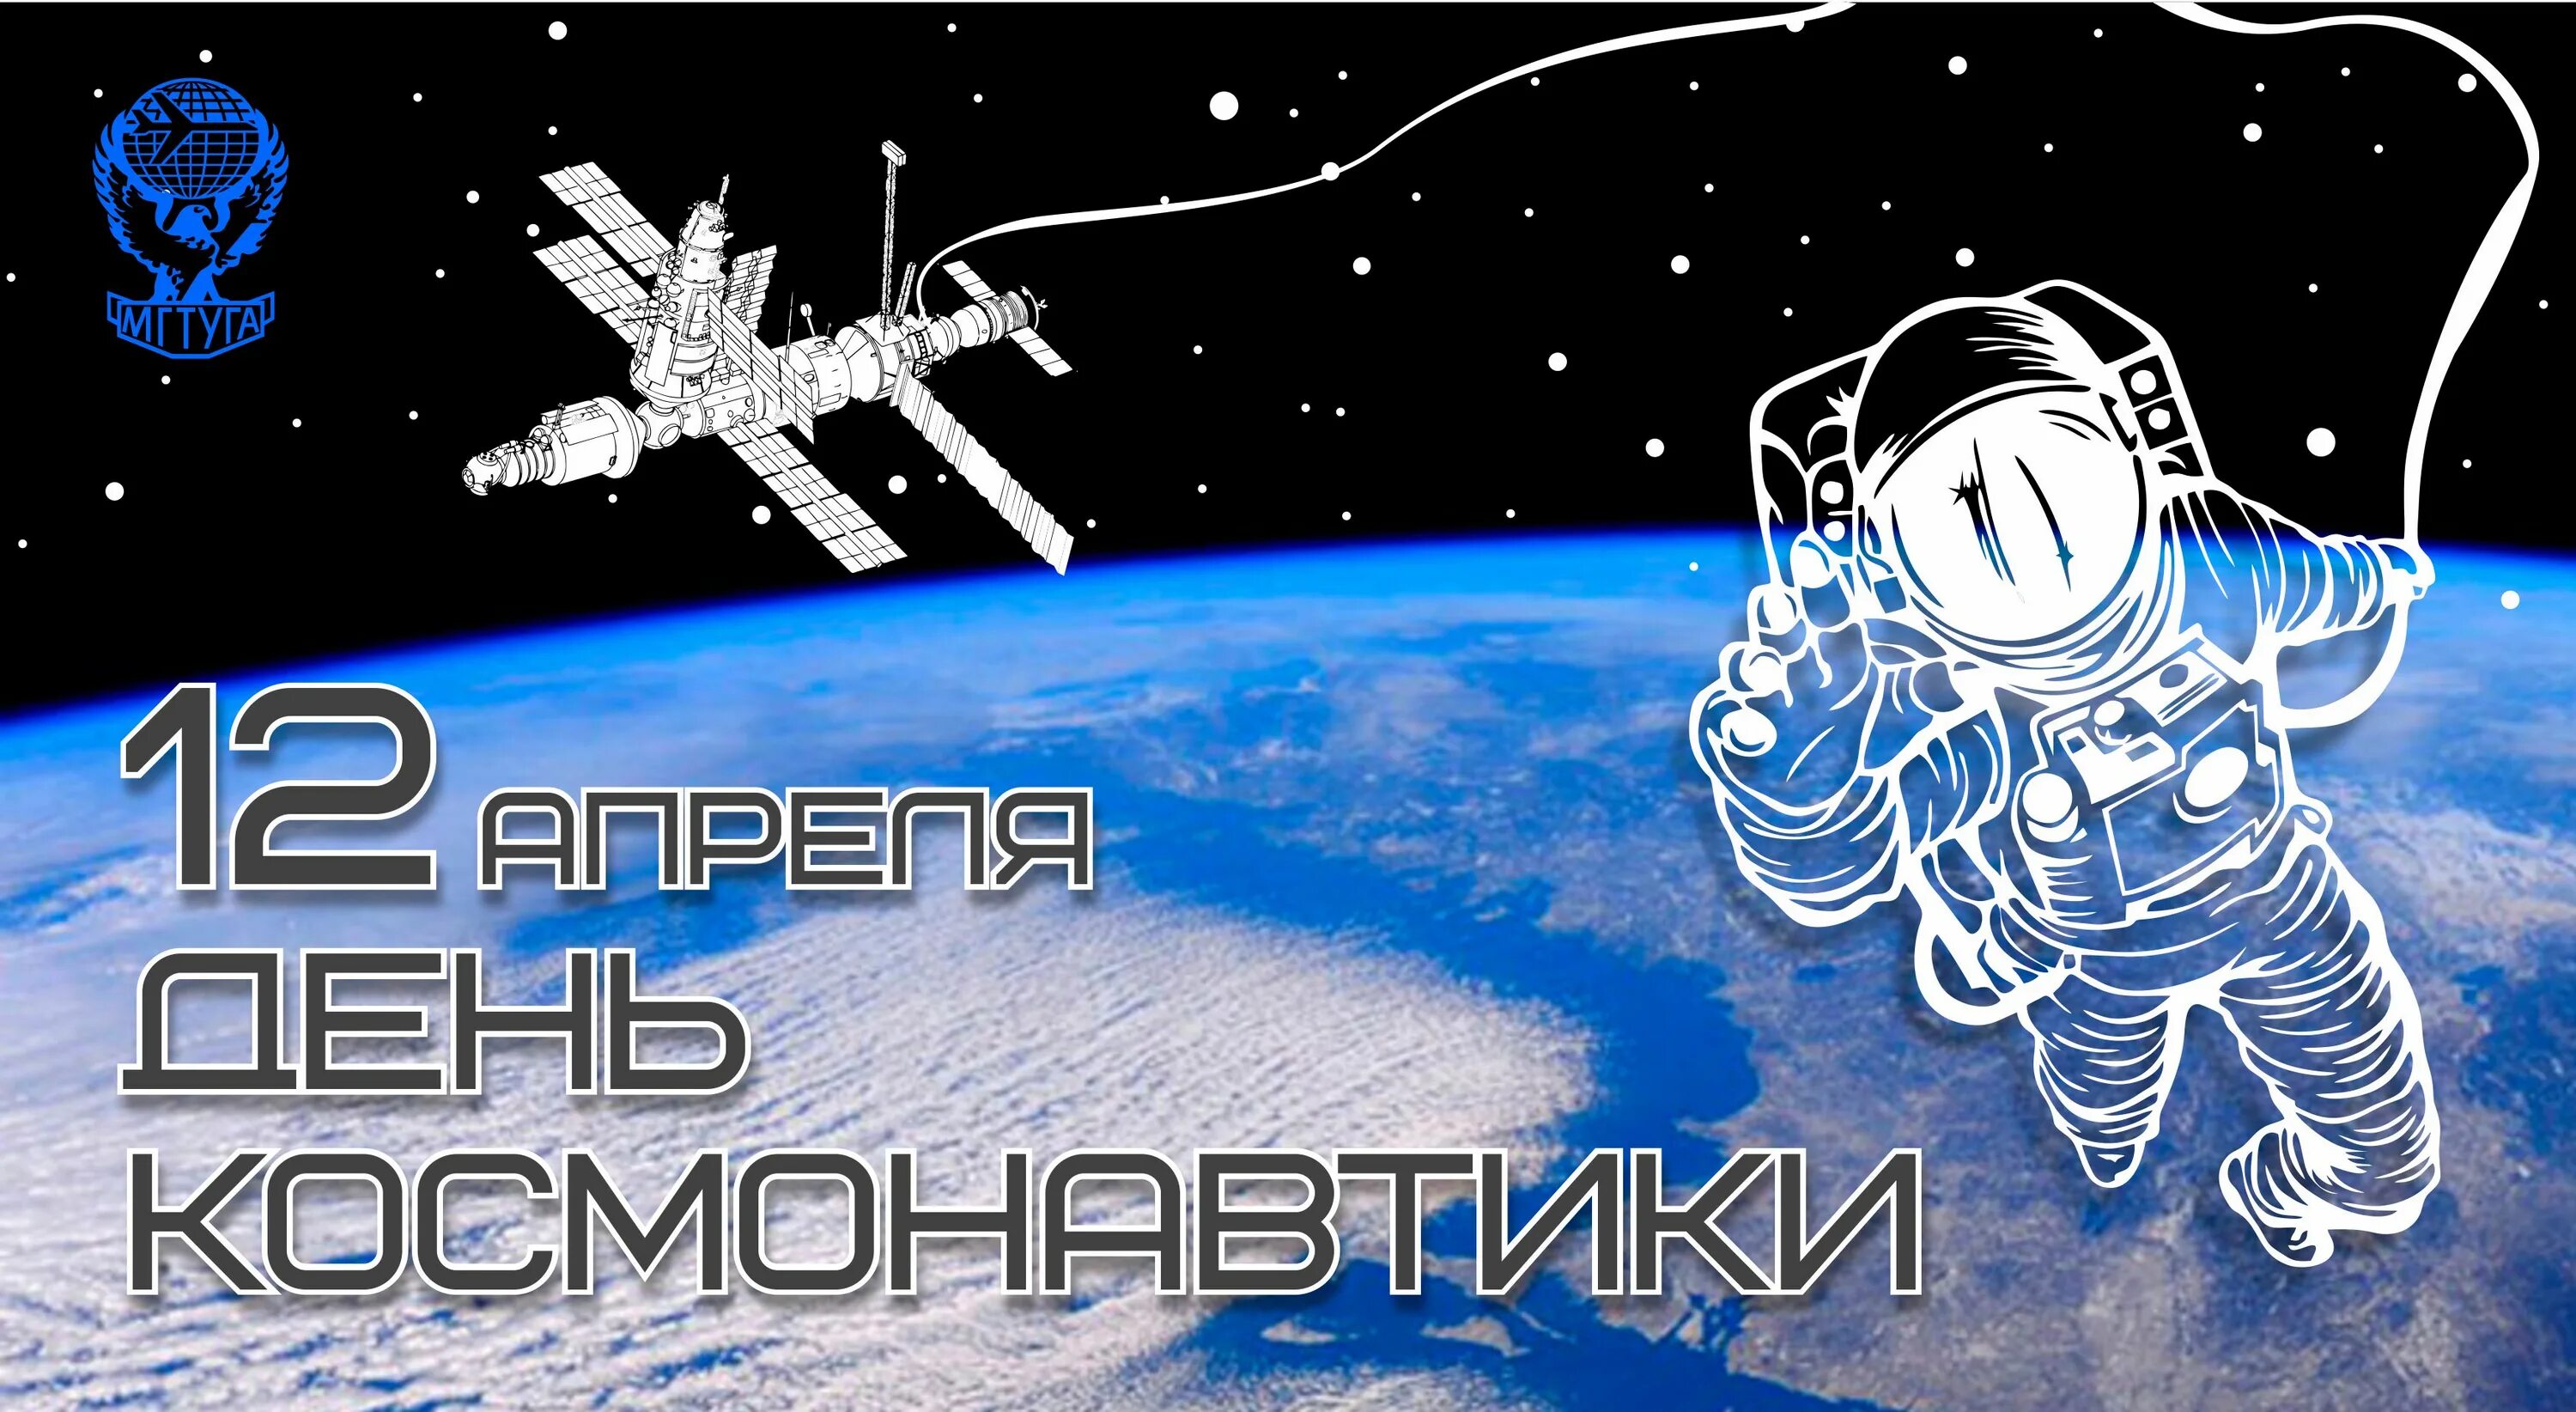 13 апреля день космонавтики. День космонавтики. С днем космонавтики поздравление. С днем космонавтики открытки. День космонавтики открытки современные.